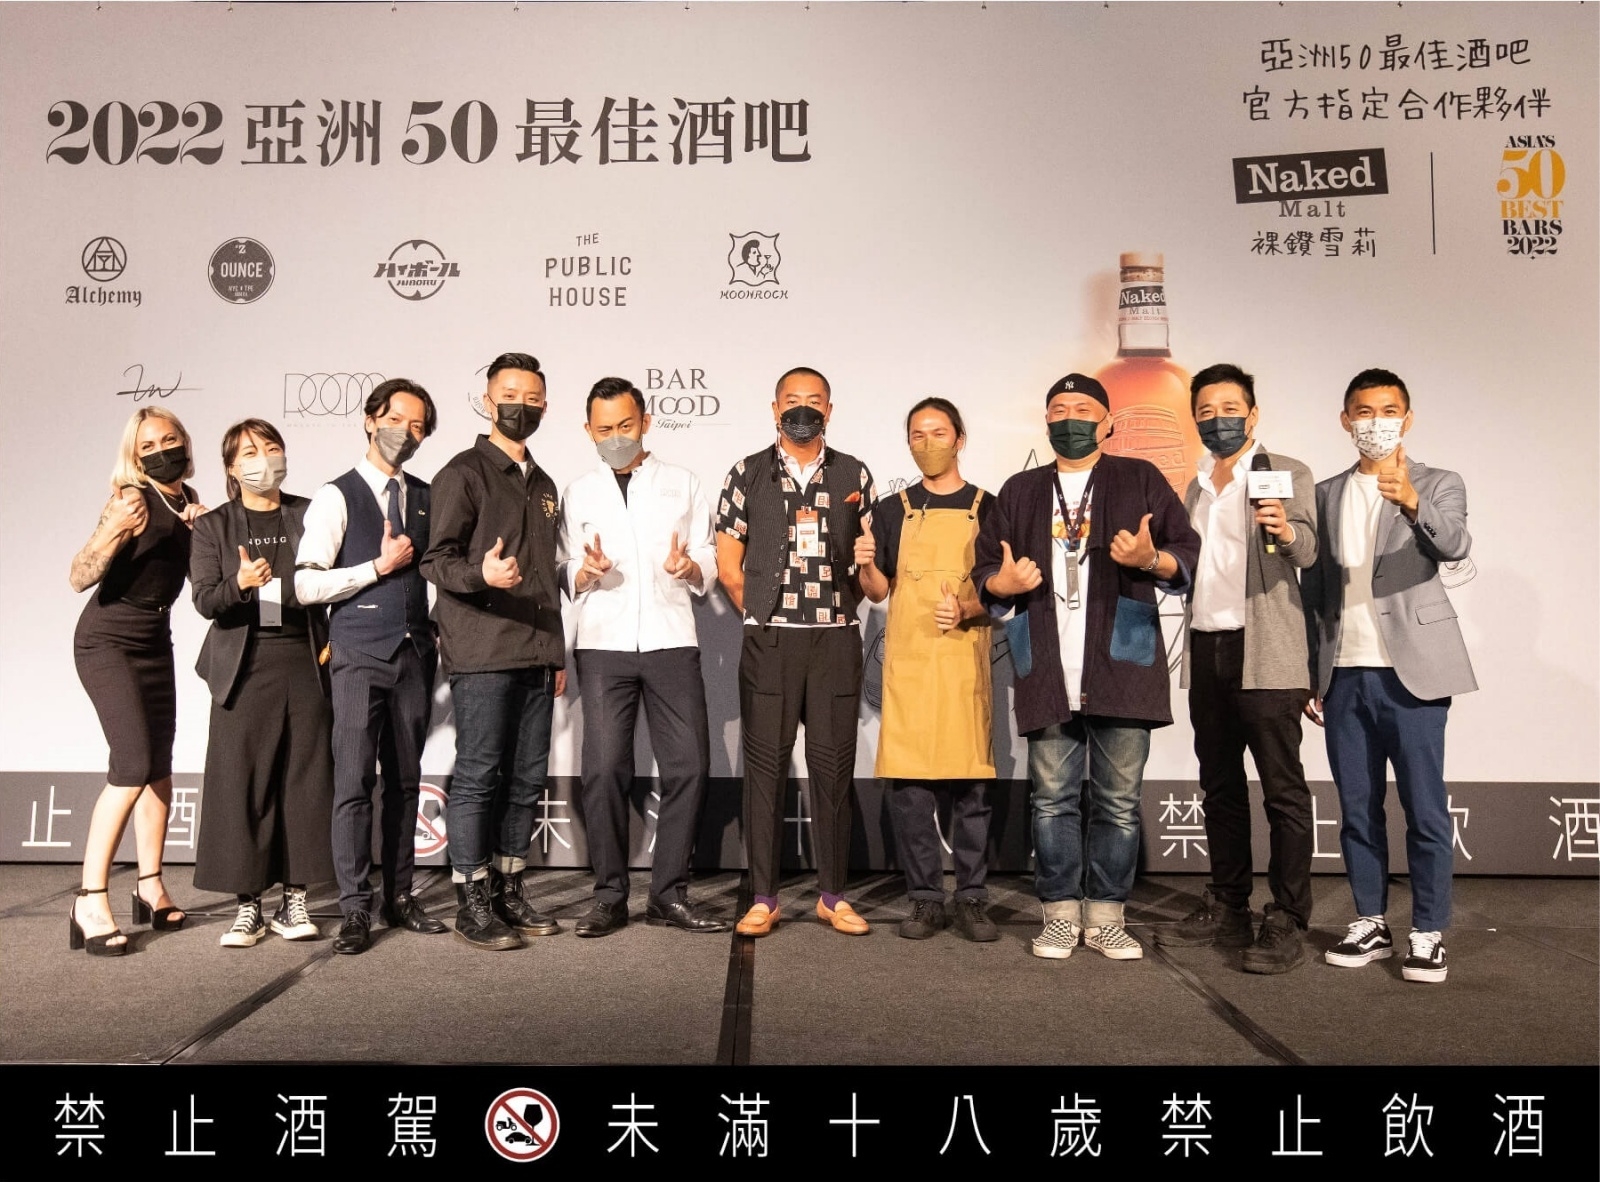 裸鑽雪莉亞洲50最佳酒吧頒獎台灣觀影派對將台灣調酒帶上國際舞台